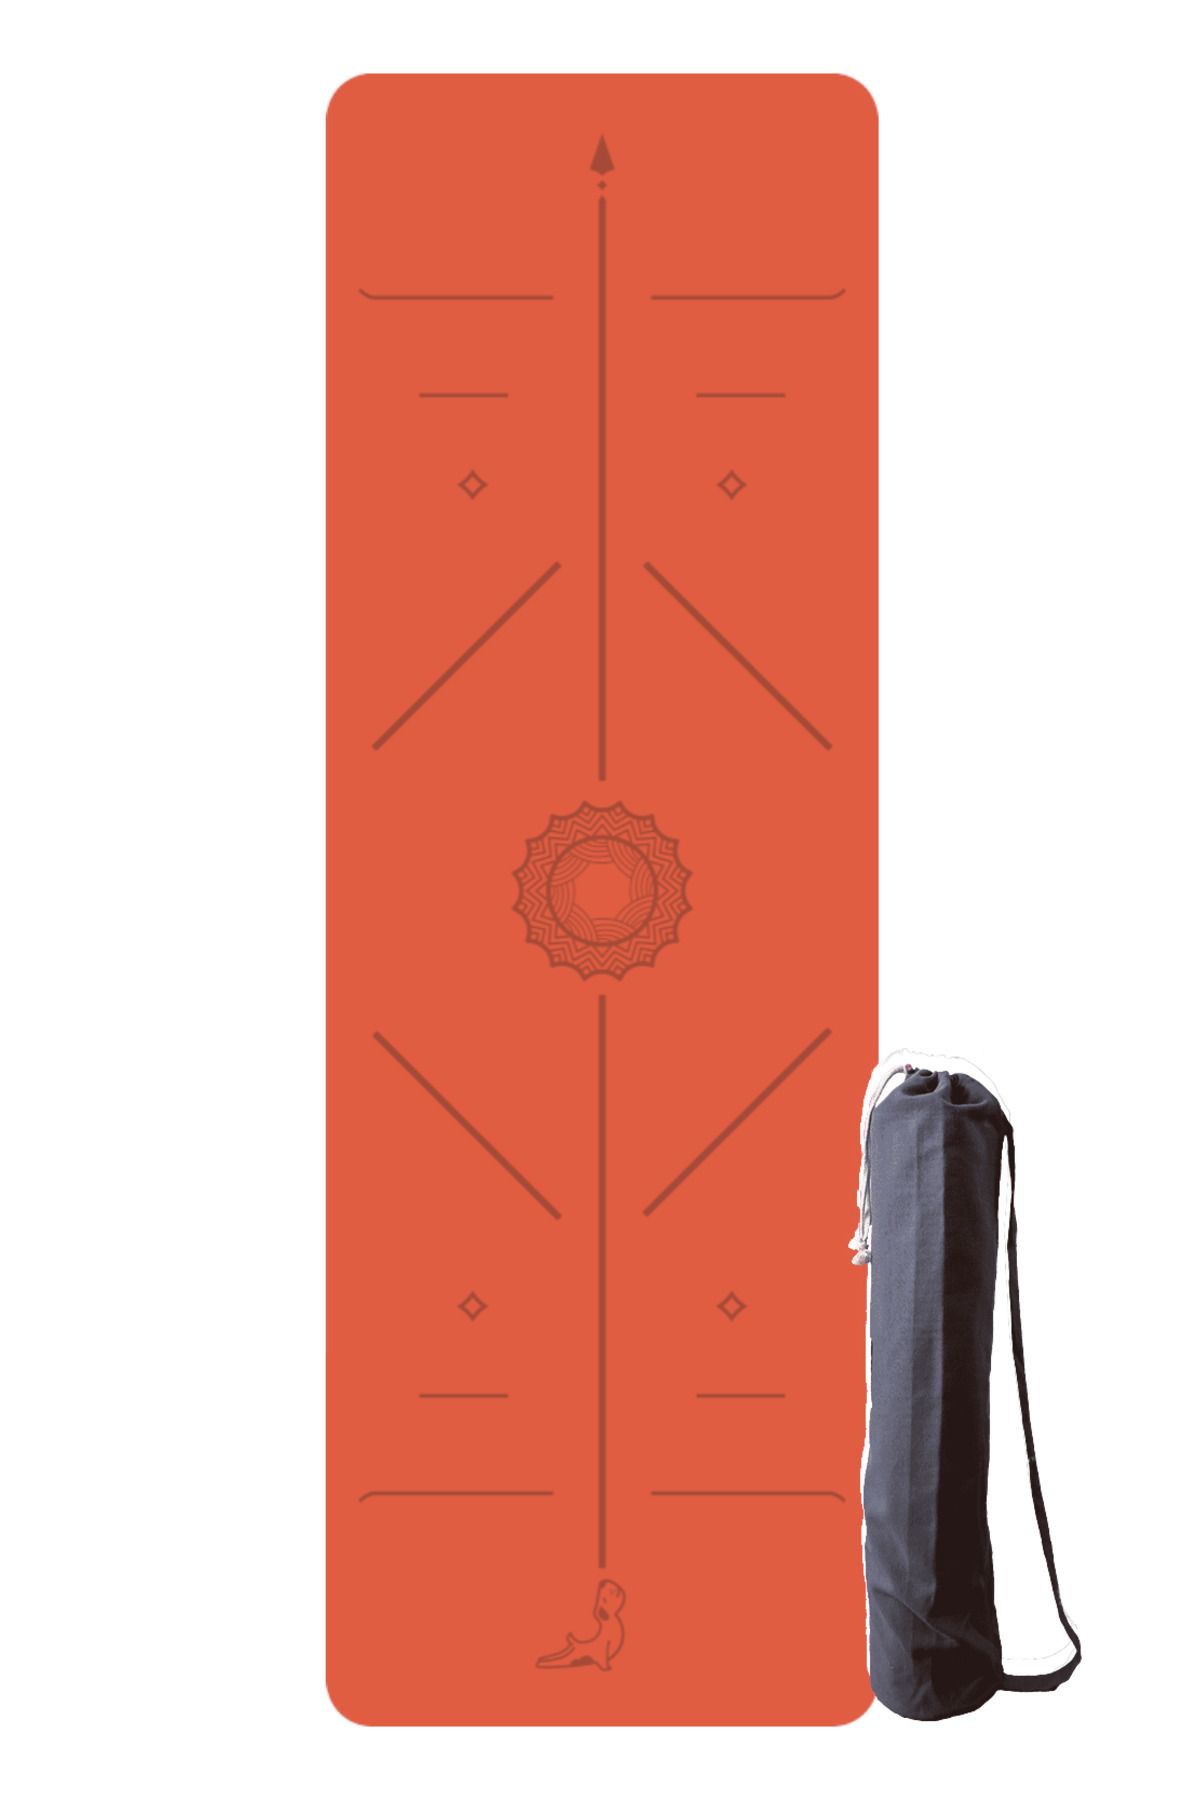 PETARYA Focus Series 4.1 mm Mercan Turuncu Doğal Kauçuk Kaydırmaz Yoga Matı